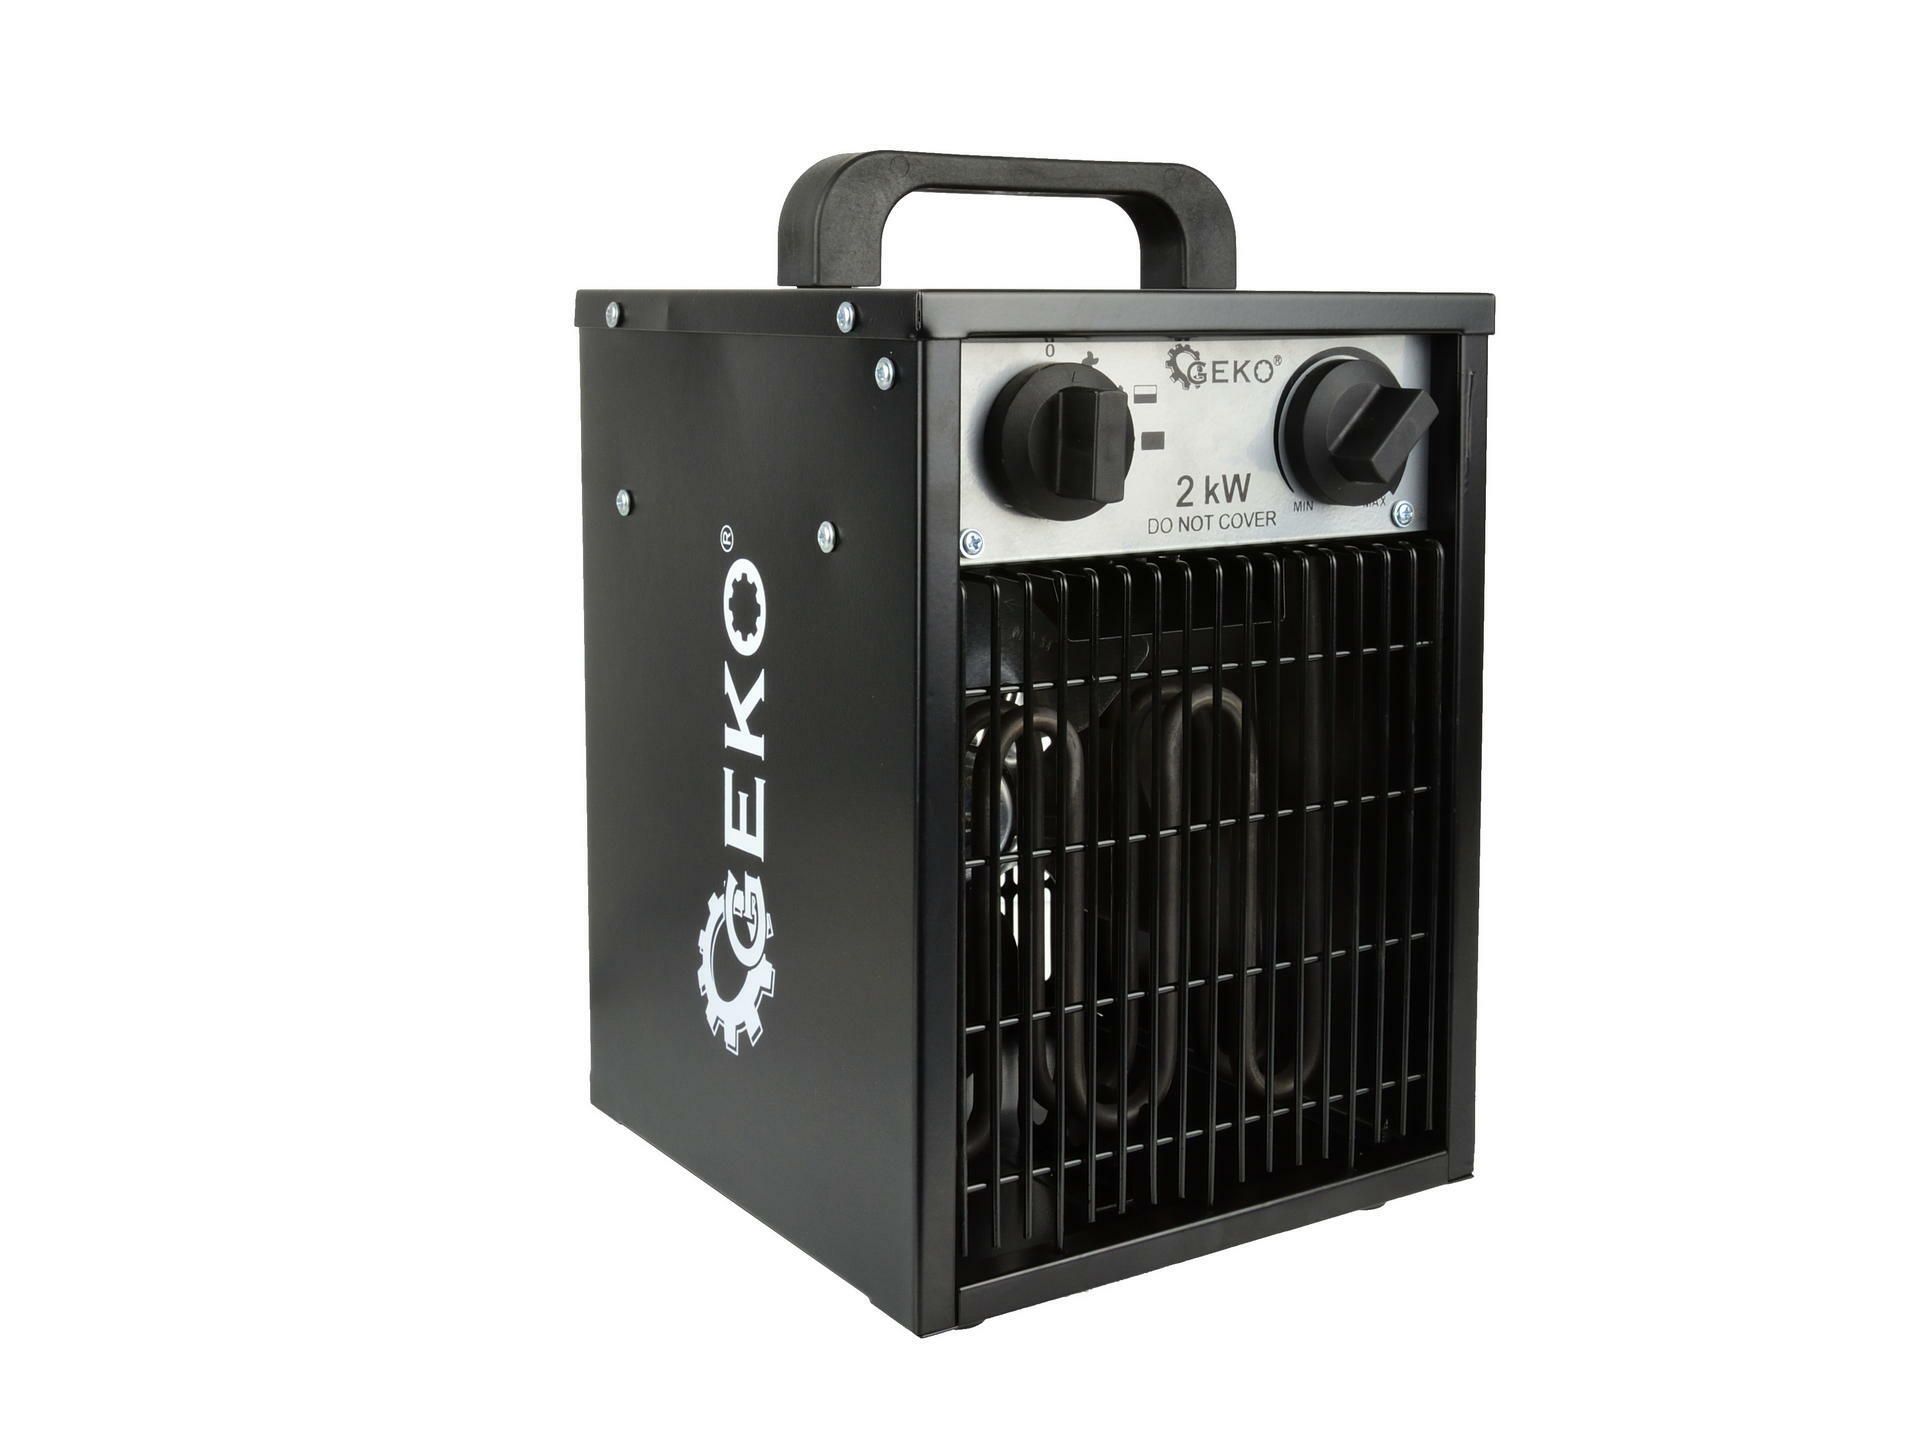 Elektrický ohřívač vzduchu s ventilátorem 2kW GEKO GEKO nářadí G80400